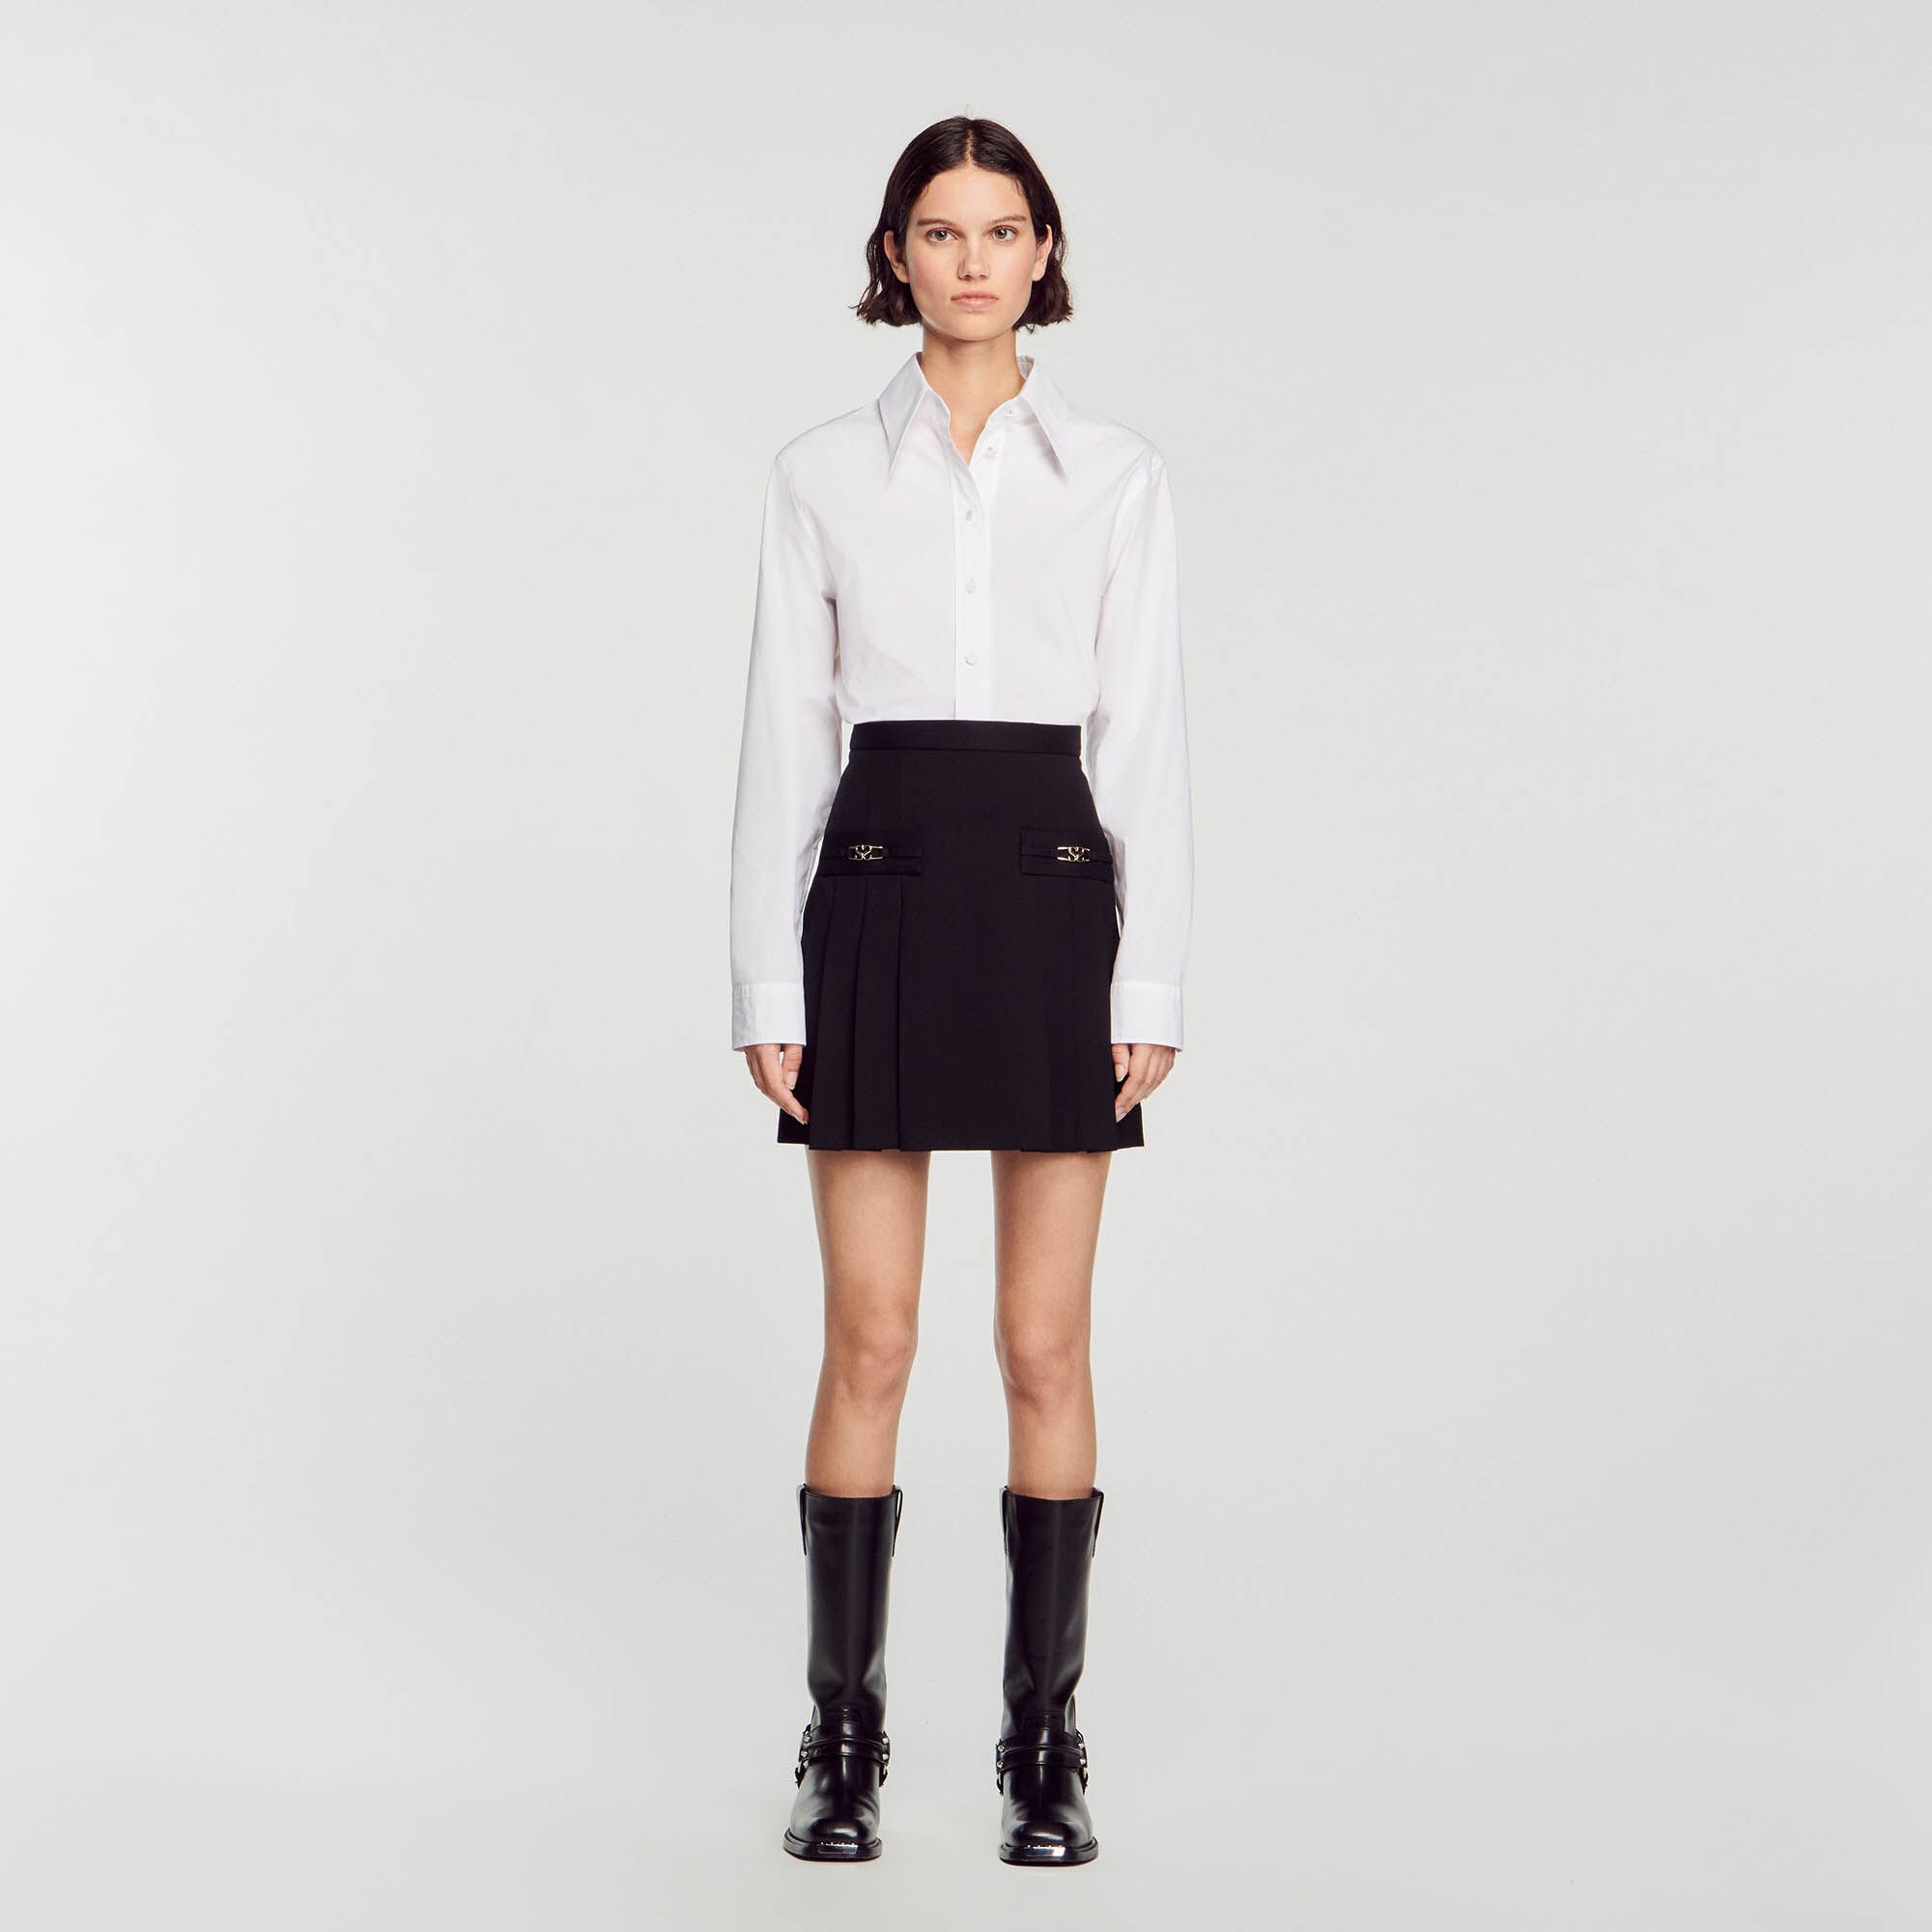 Short Black Knit Skirt, Black Knitted Skirt